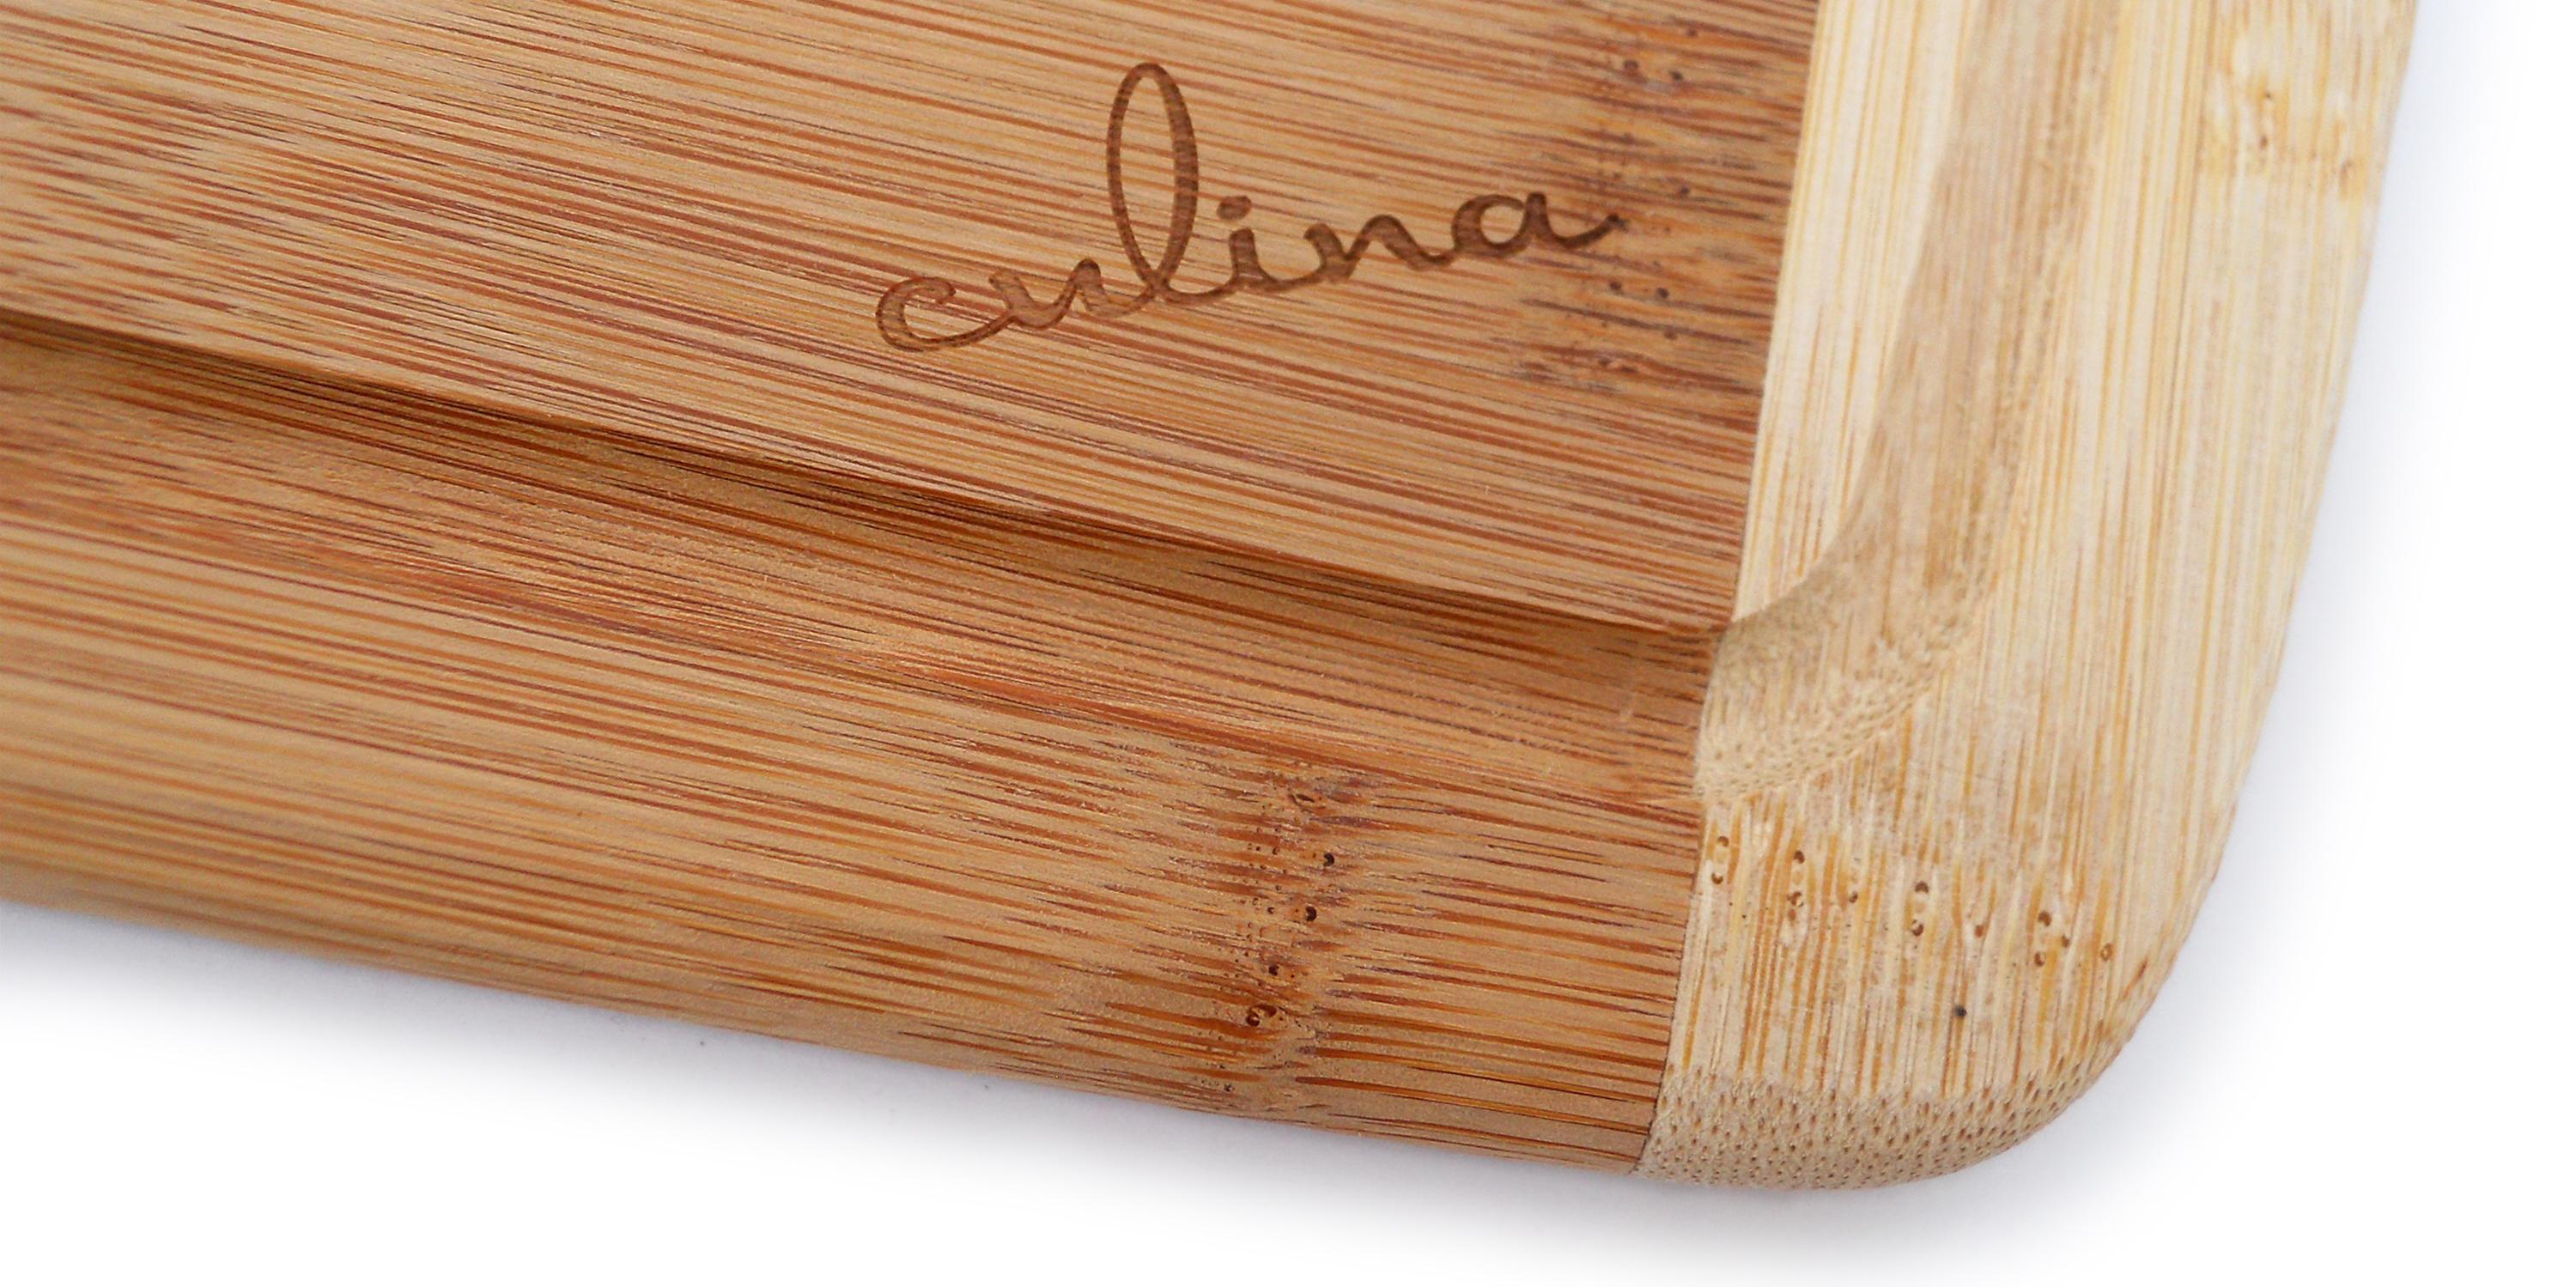 culina-bamboo-1-inch-cutting-board